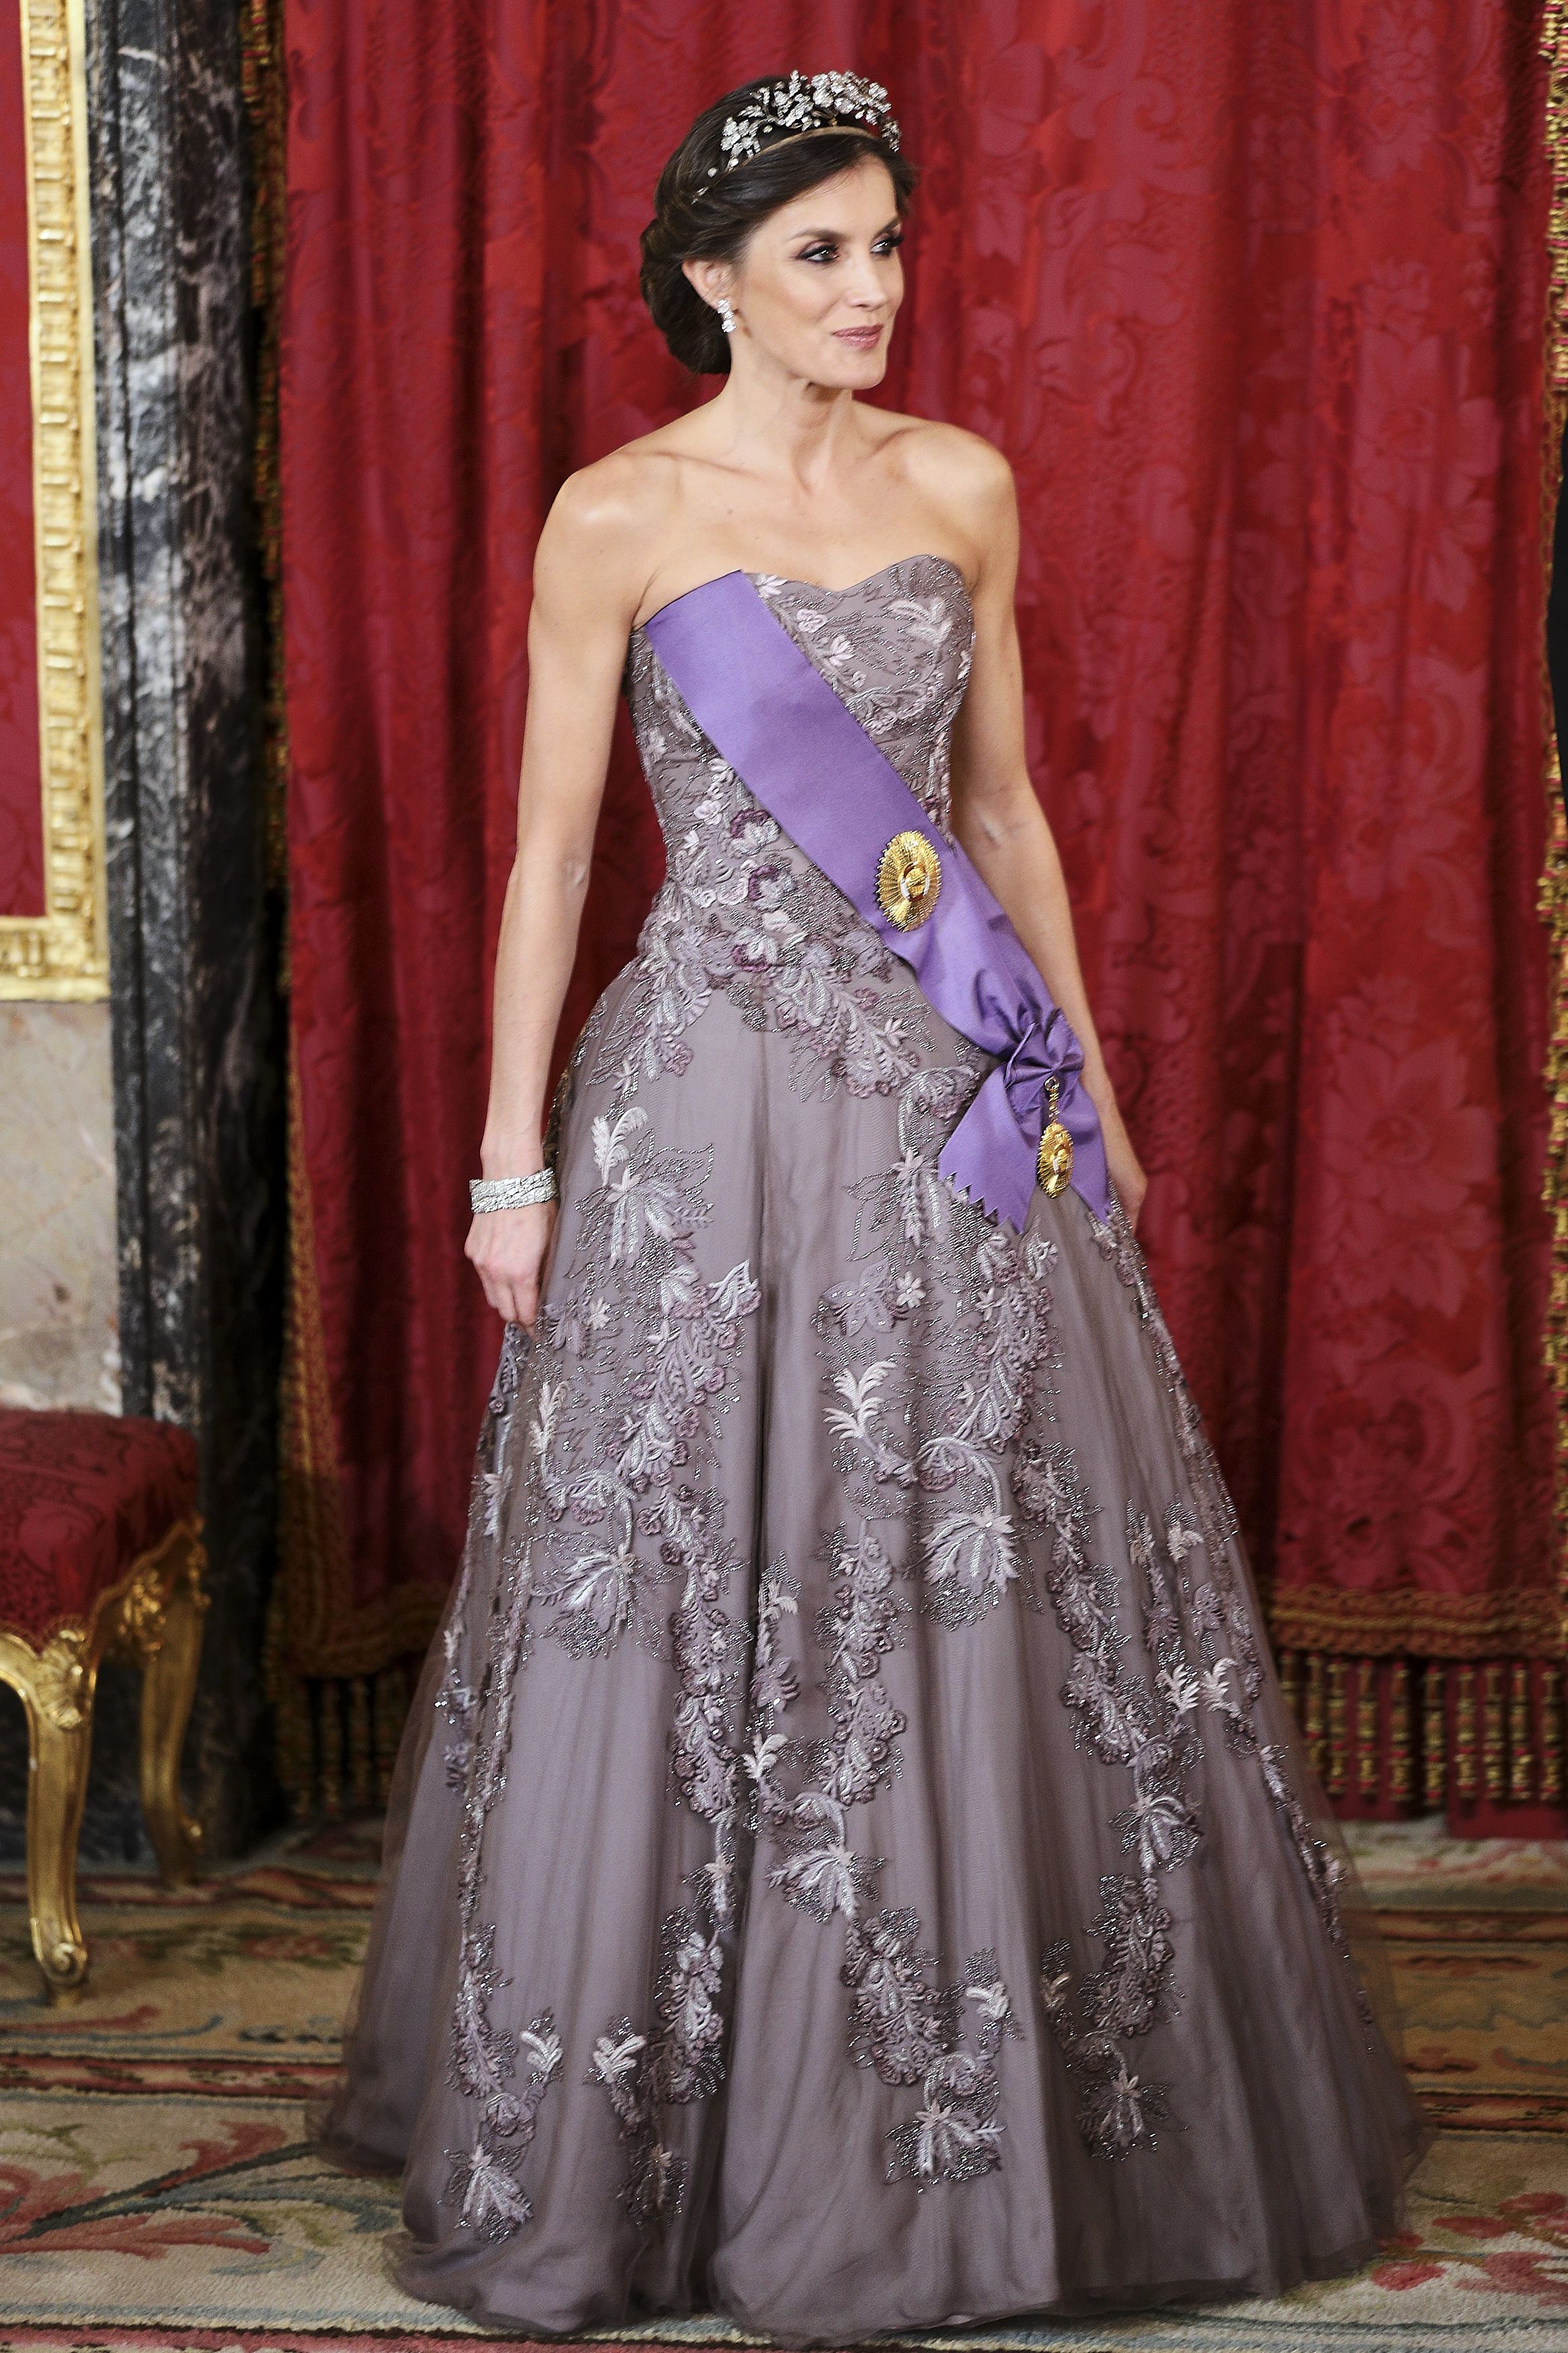 Letizia luce el mismo vestido de Varela que en la cena de gala de la boda Kate Middleton - vuelve a el vestido con el que triunfó en